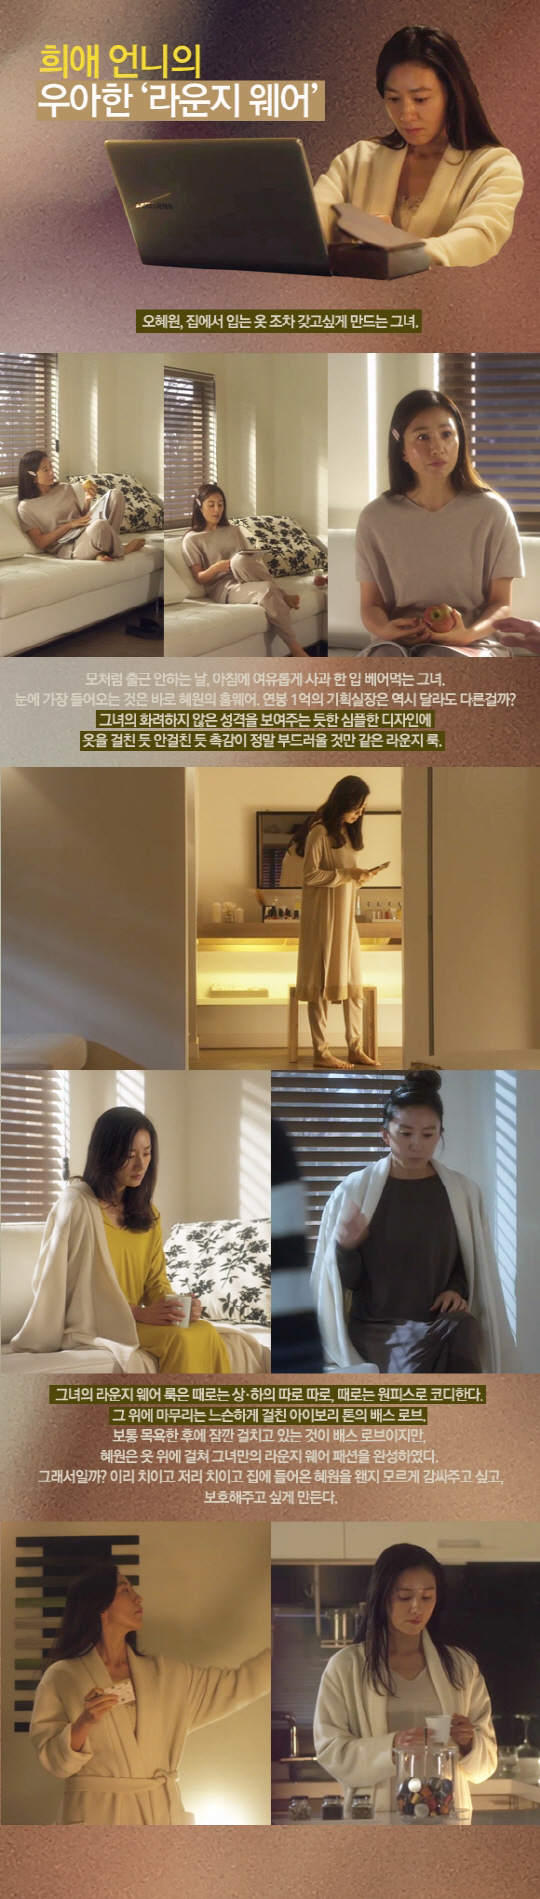 '평상복도 우아하게'..'밀회' 김희애 패션 따라잡기